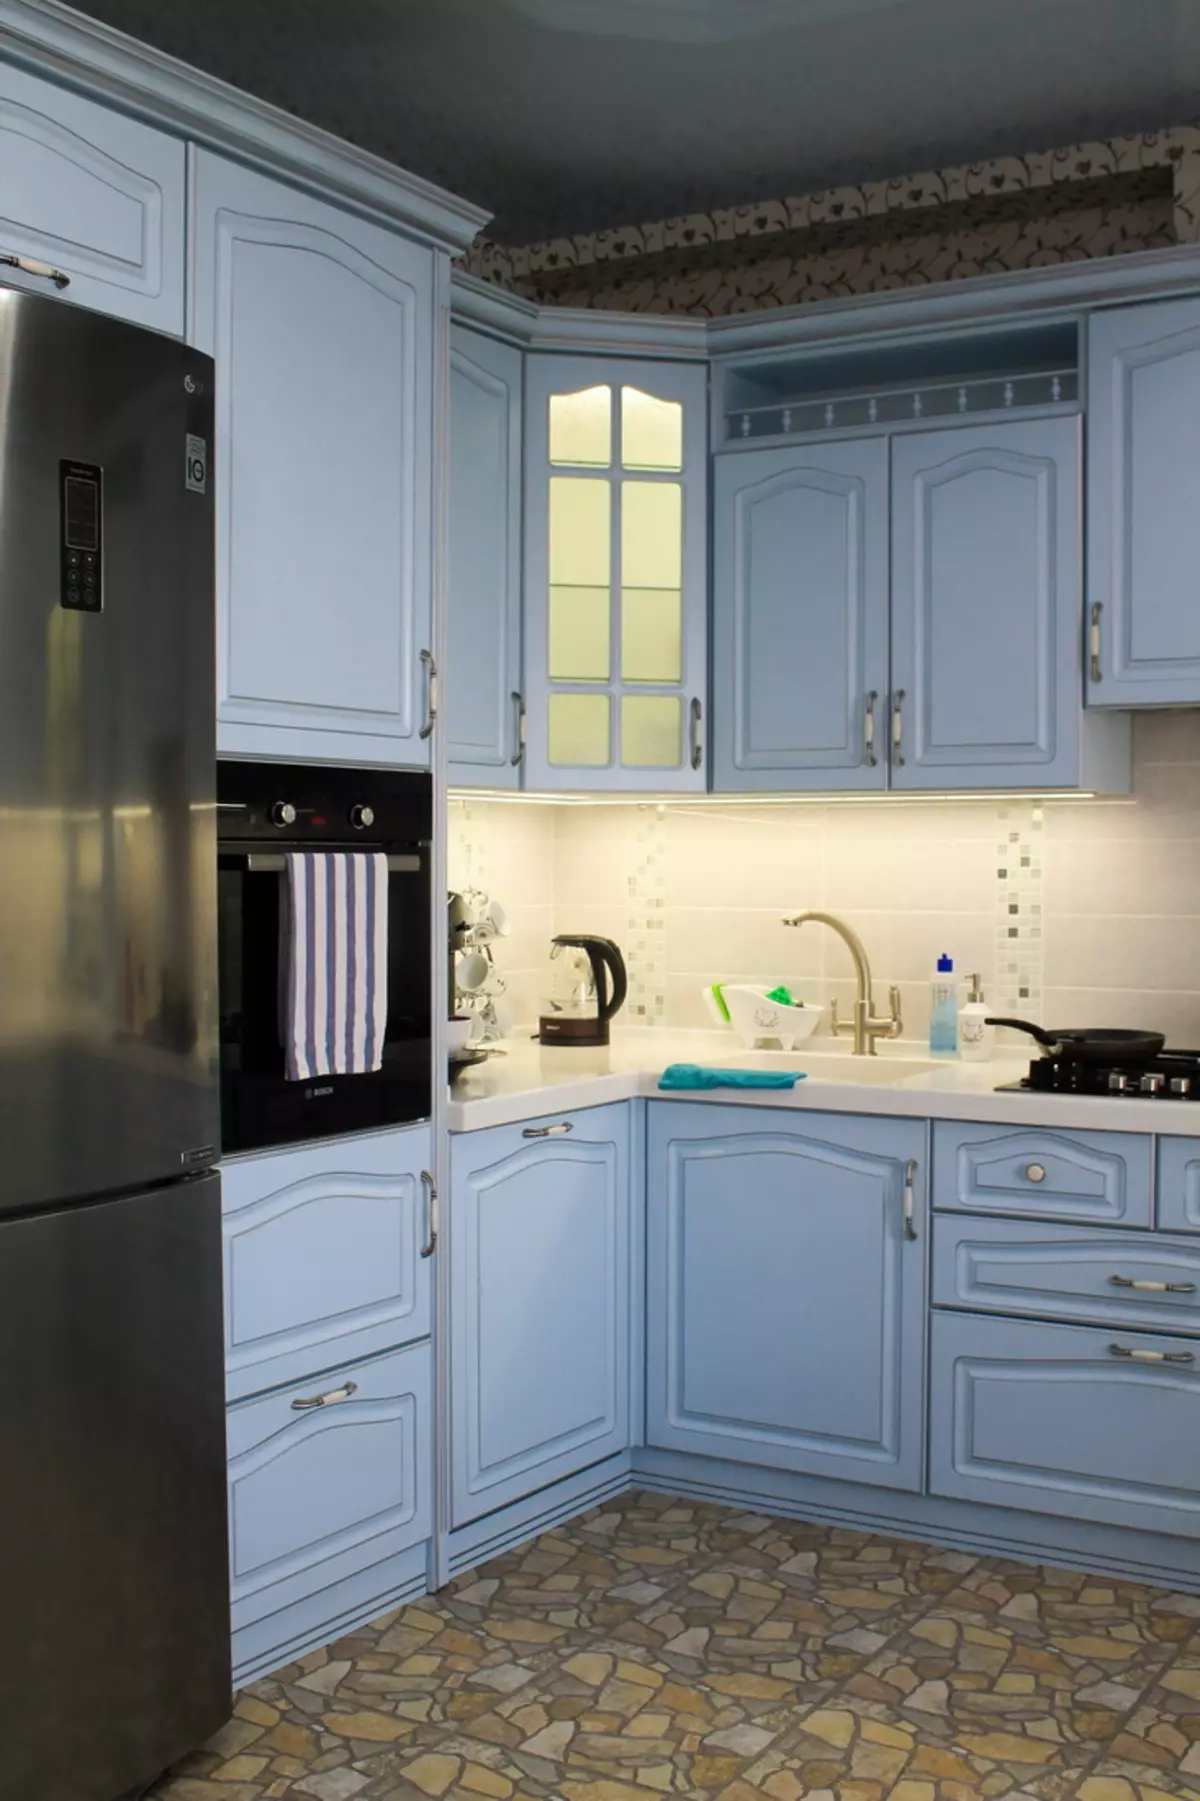 Bucătărie albastră (82 fotografii): Ce culori sunt combinate în interiorul unui set de bucătărie albastră? Design de bucătărie în tonuri albastre ușoare și întunecate 9555_23